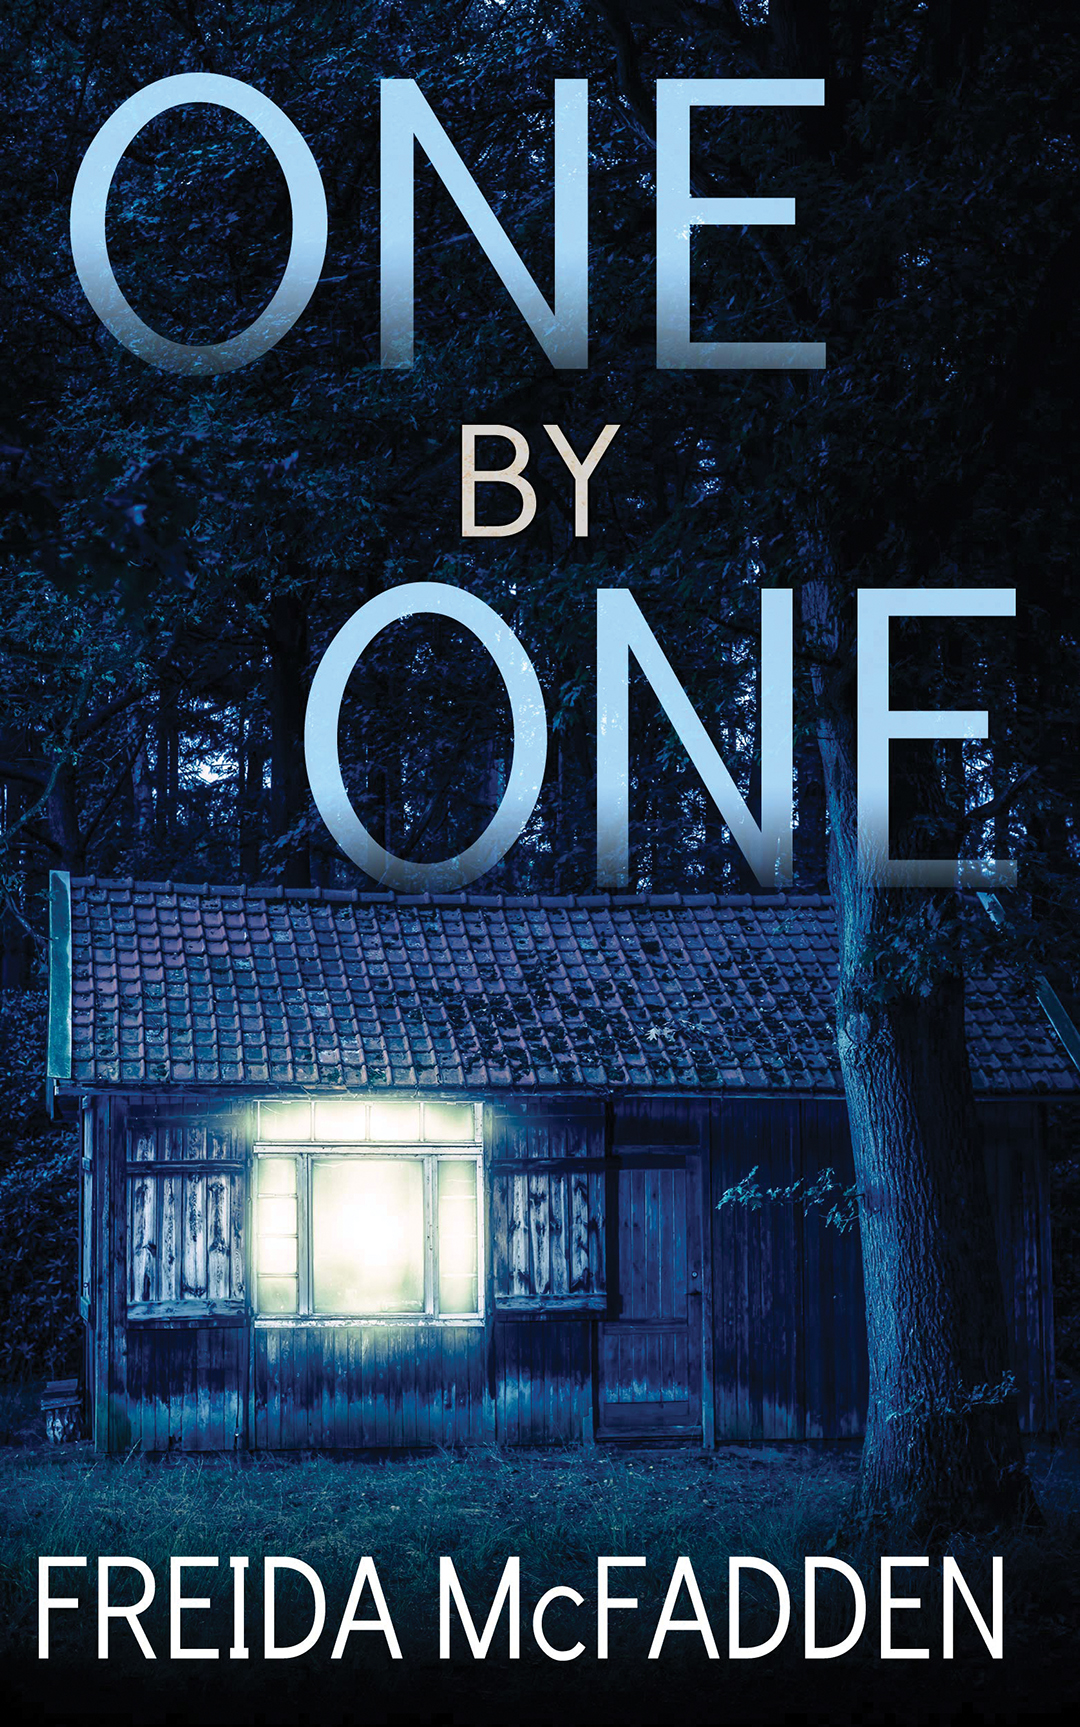 One by One by Freida McFadden